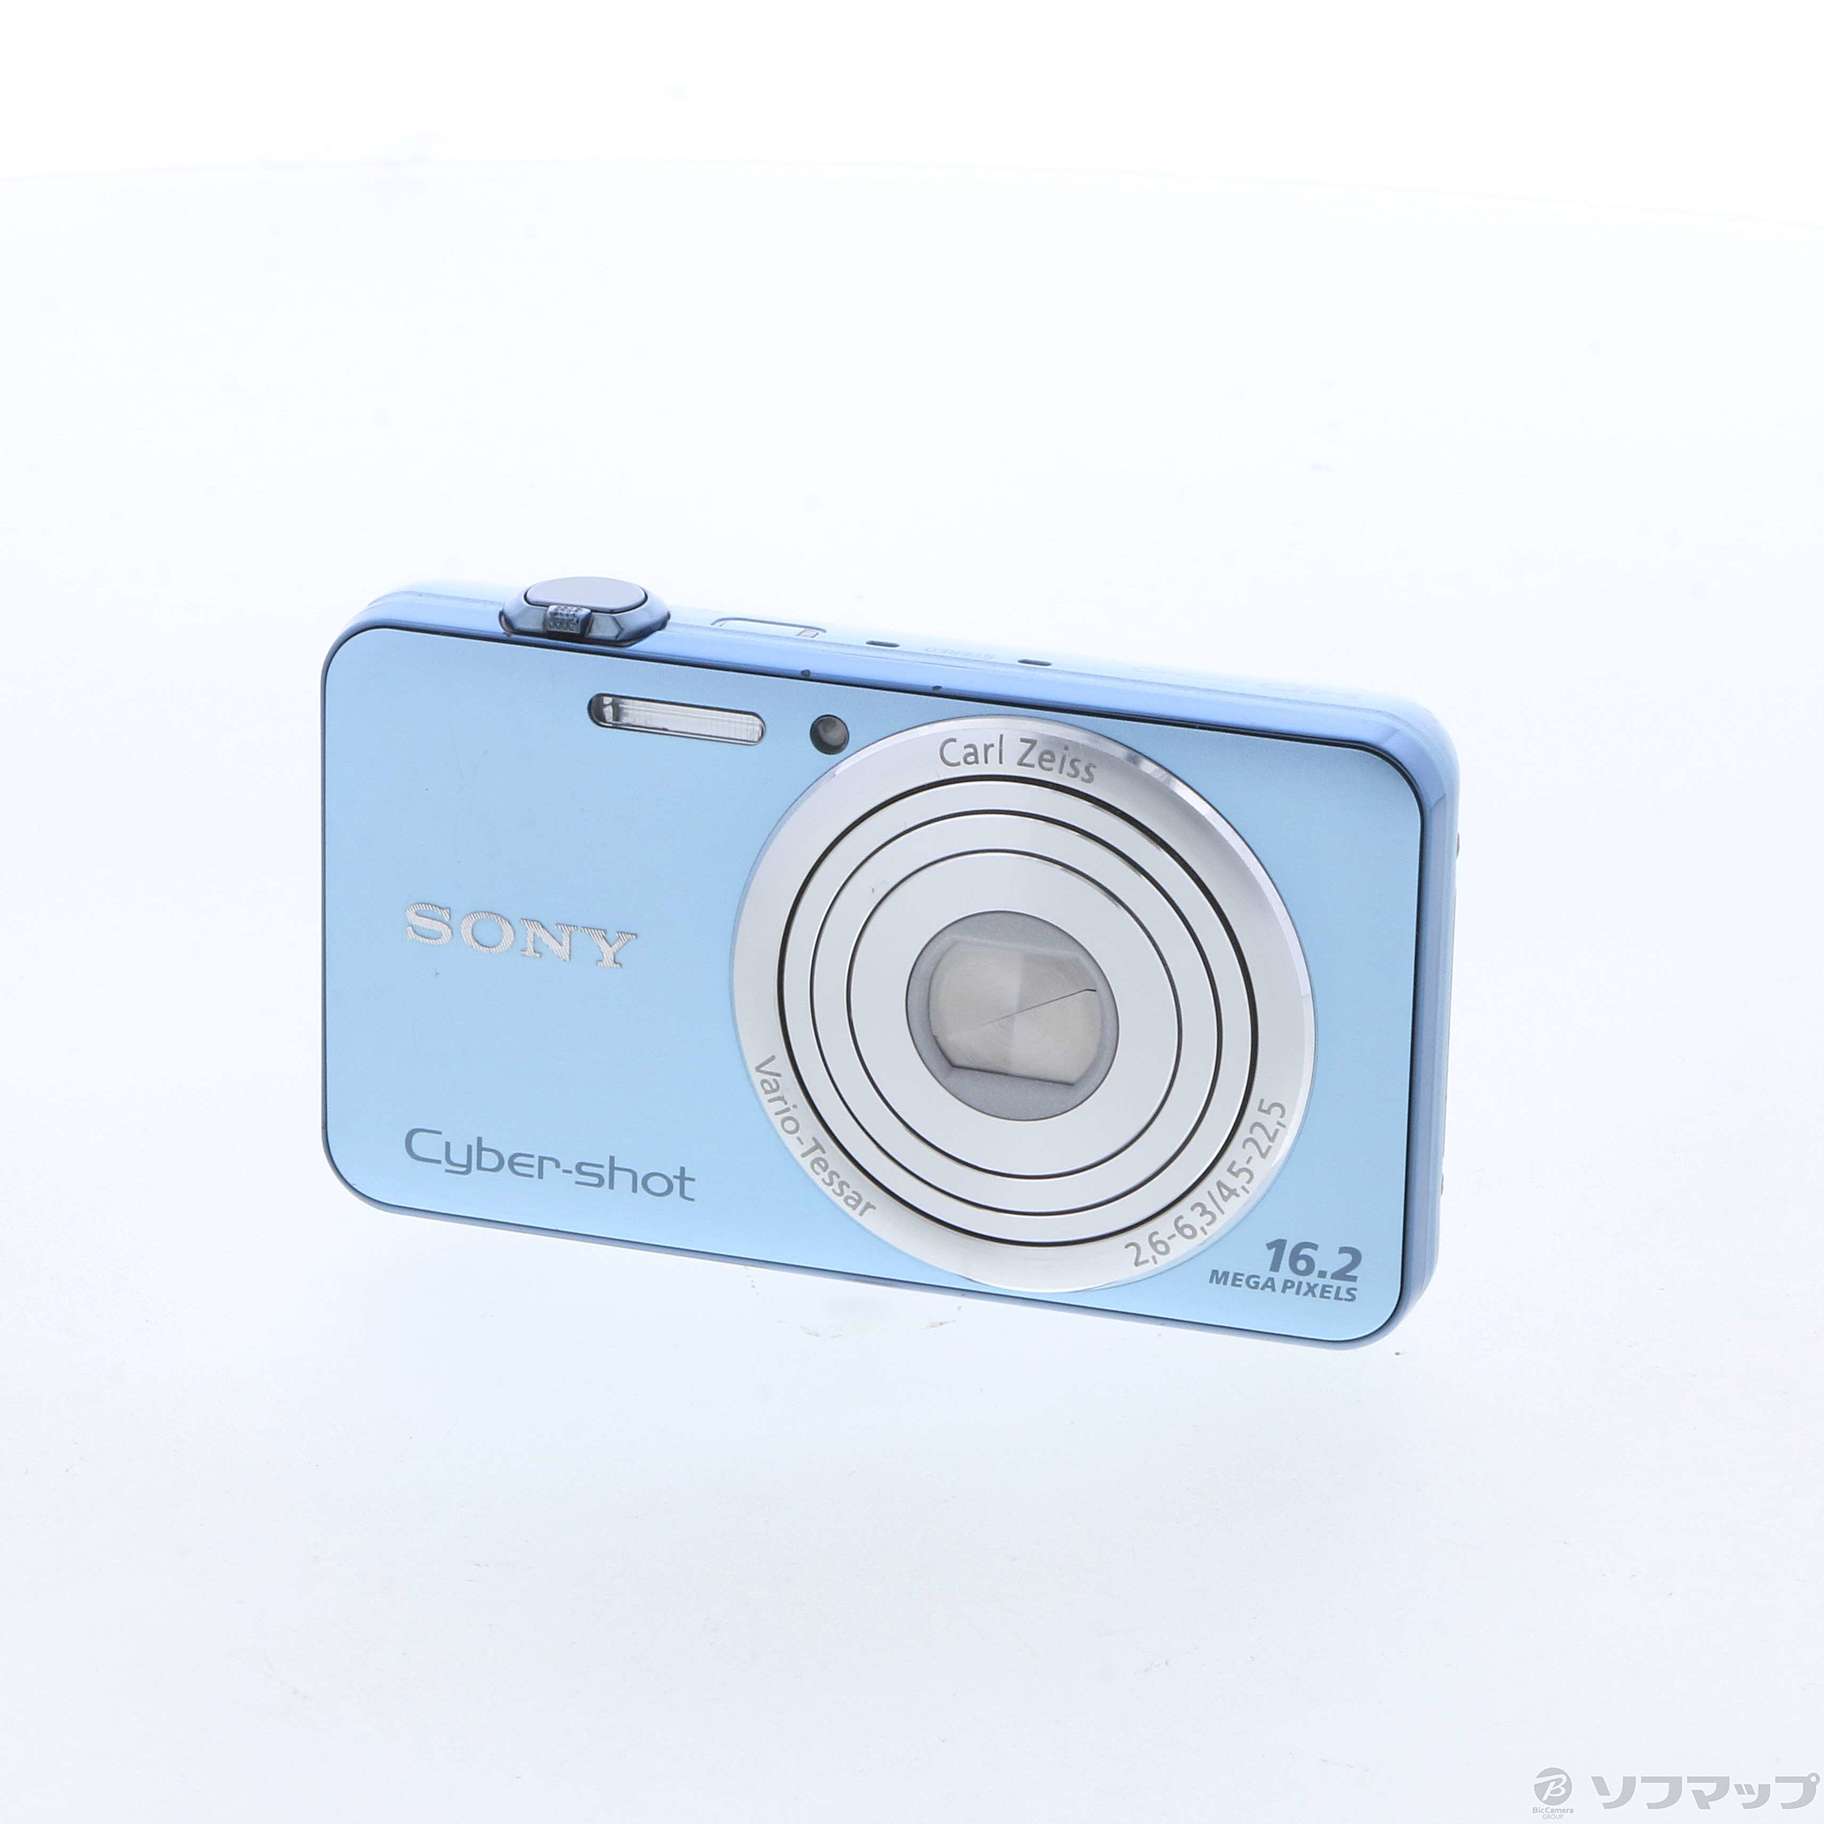 SONY Cyber-shot DSC-W750 デジタルカメラ フルセット - www.kibrol.de